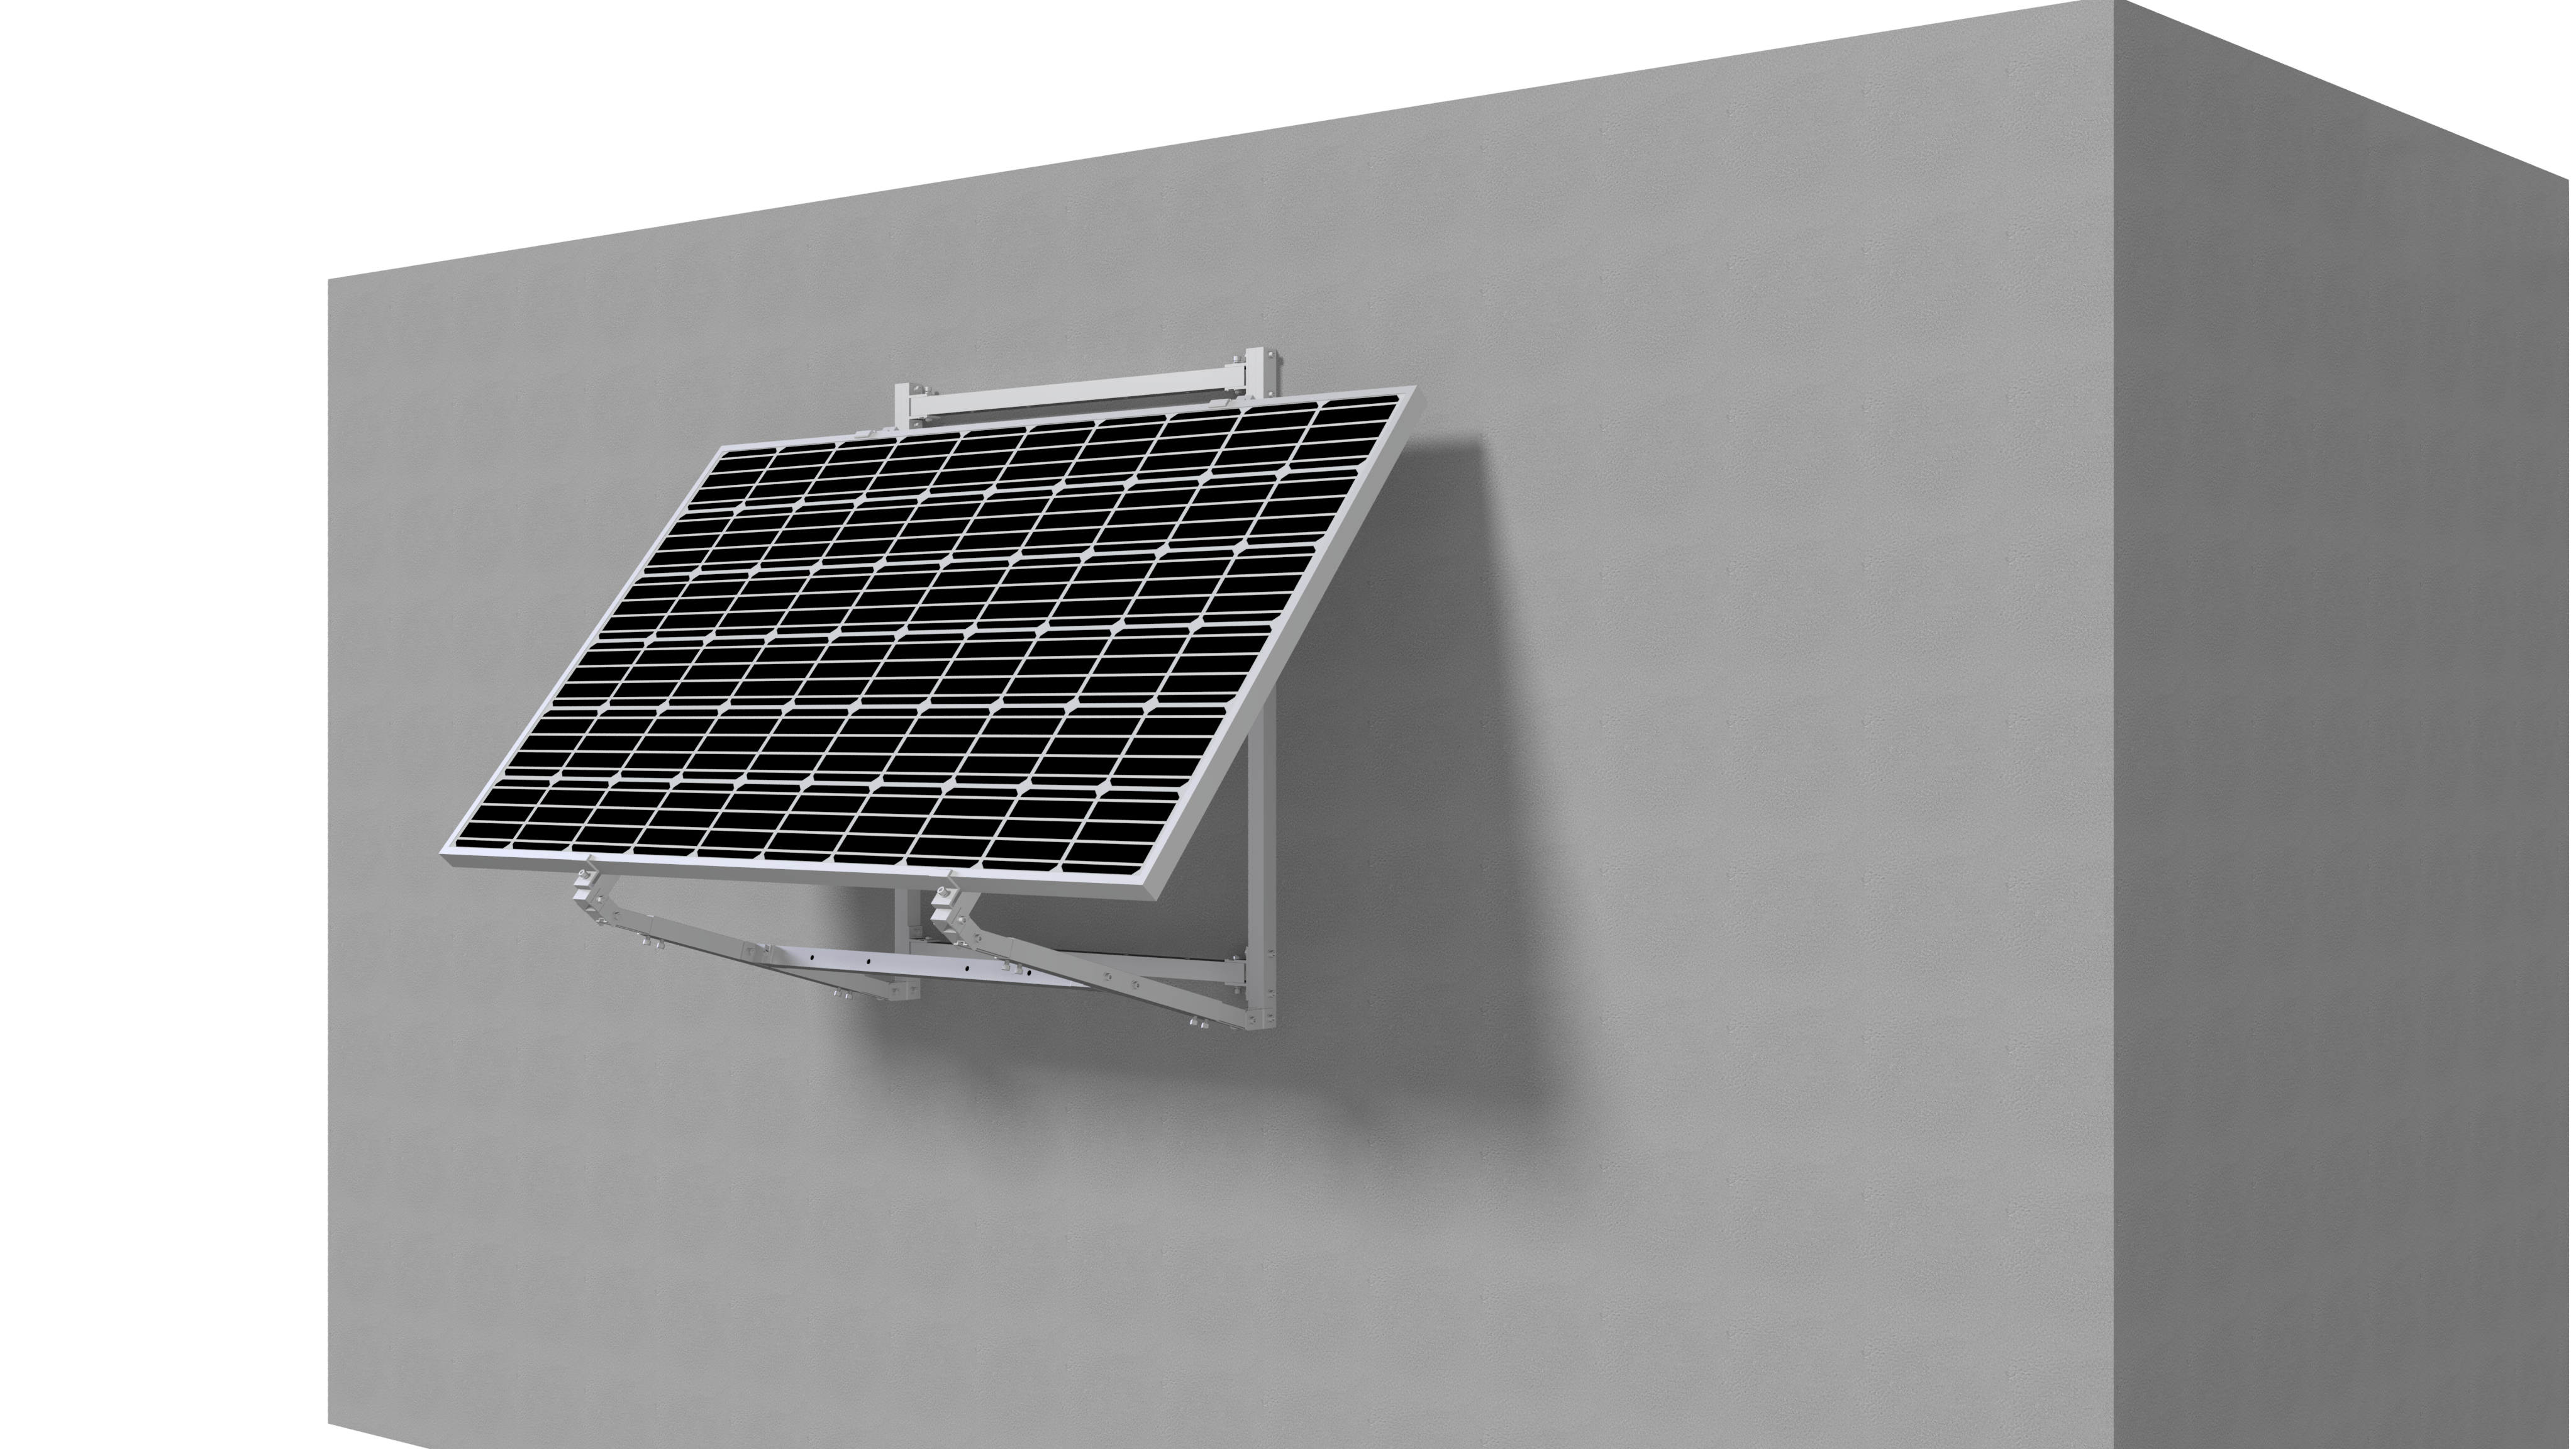  21018-Solarpanel 1640W schwarz + 1500w Micro-Wechselrichter, sofort lieferbar